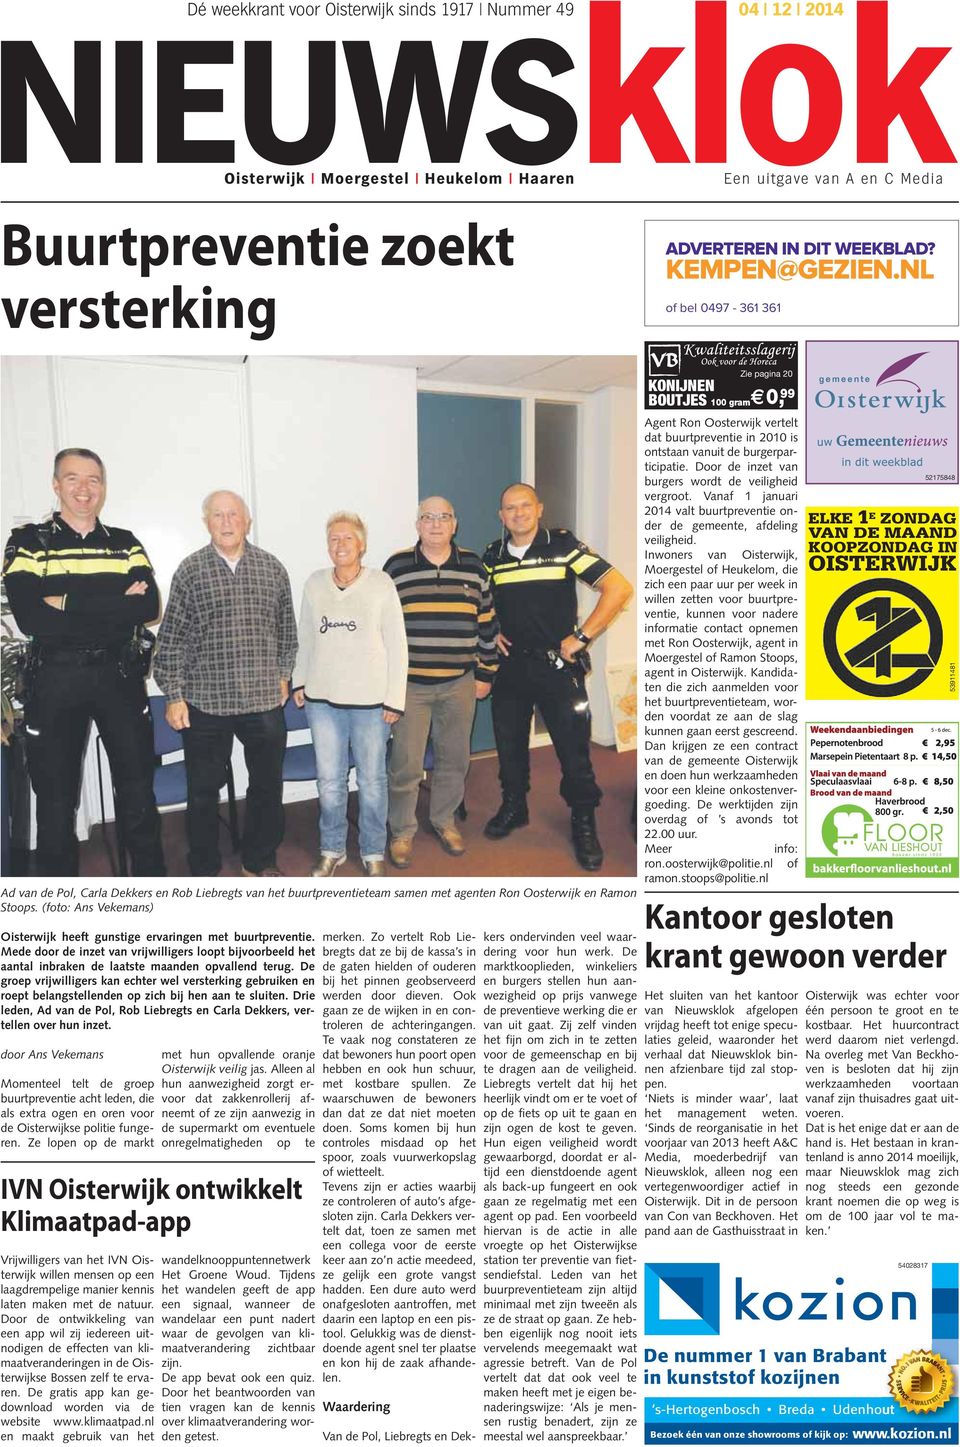 (foto: Ans Vekemans) Oisterwijk heeft gunstige ervaringen met buurtpreventie. Mede door de inzet van vrijwilligers loopt bijvoorbeeld het aantal inbraken de laatste maanden opvallend terug.